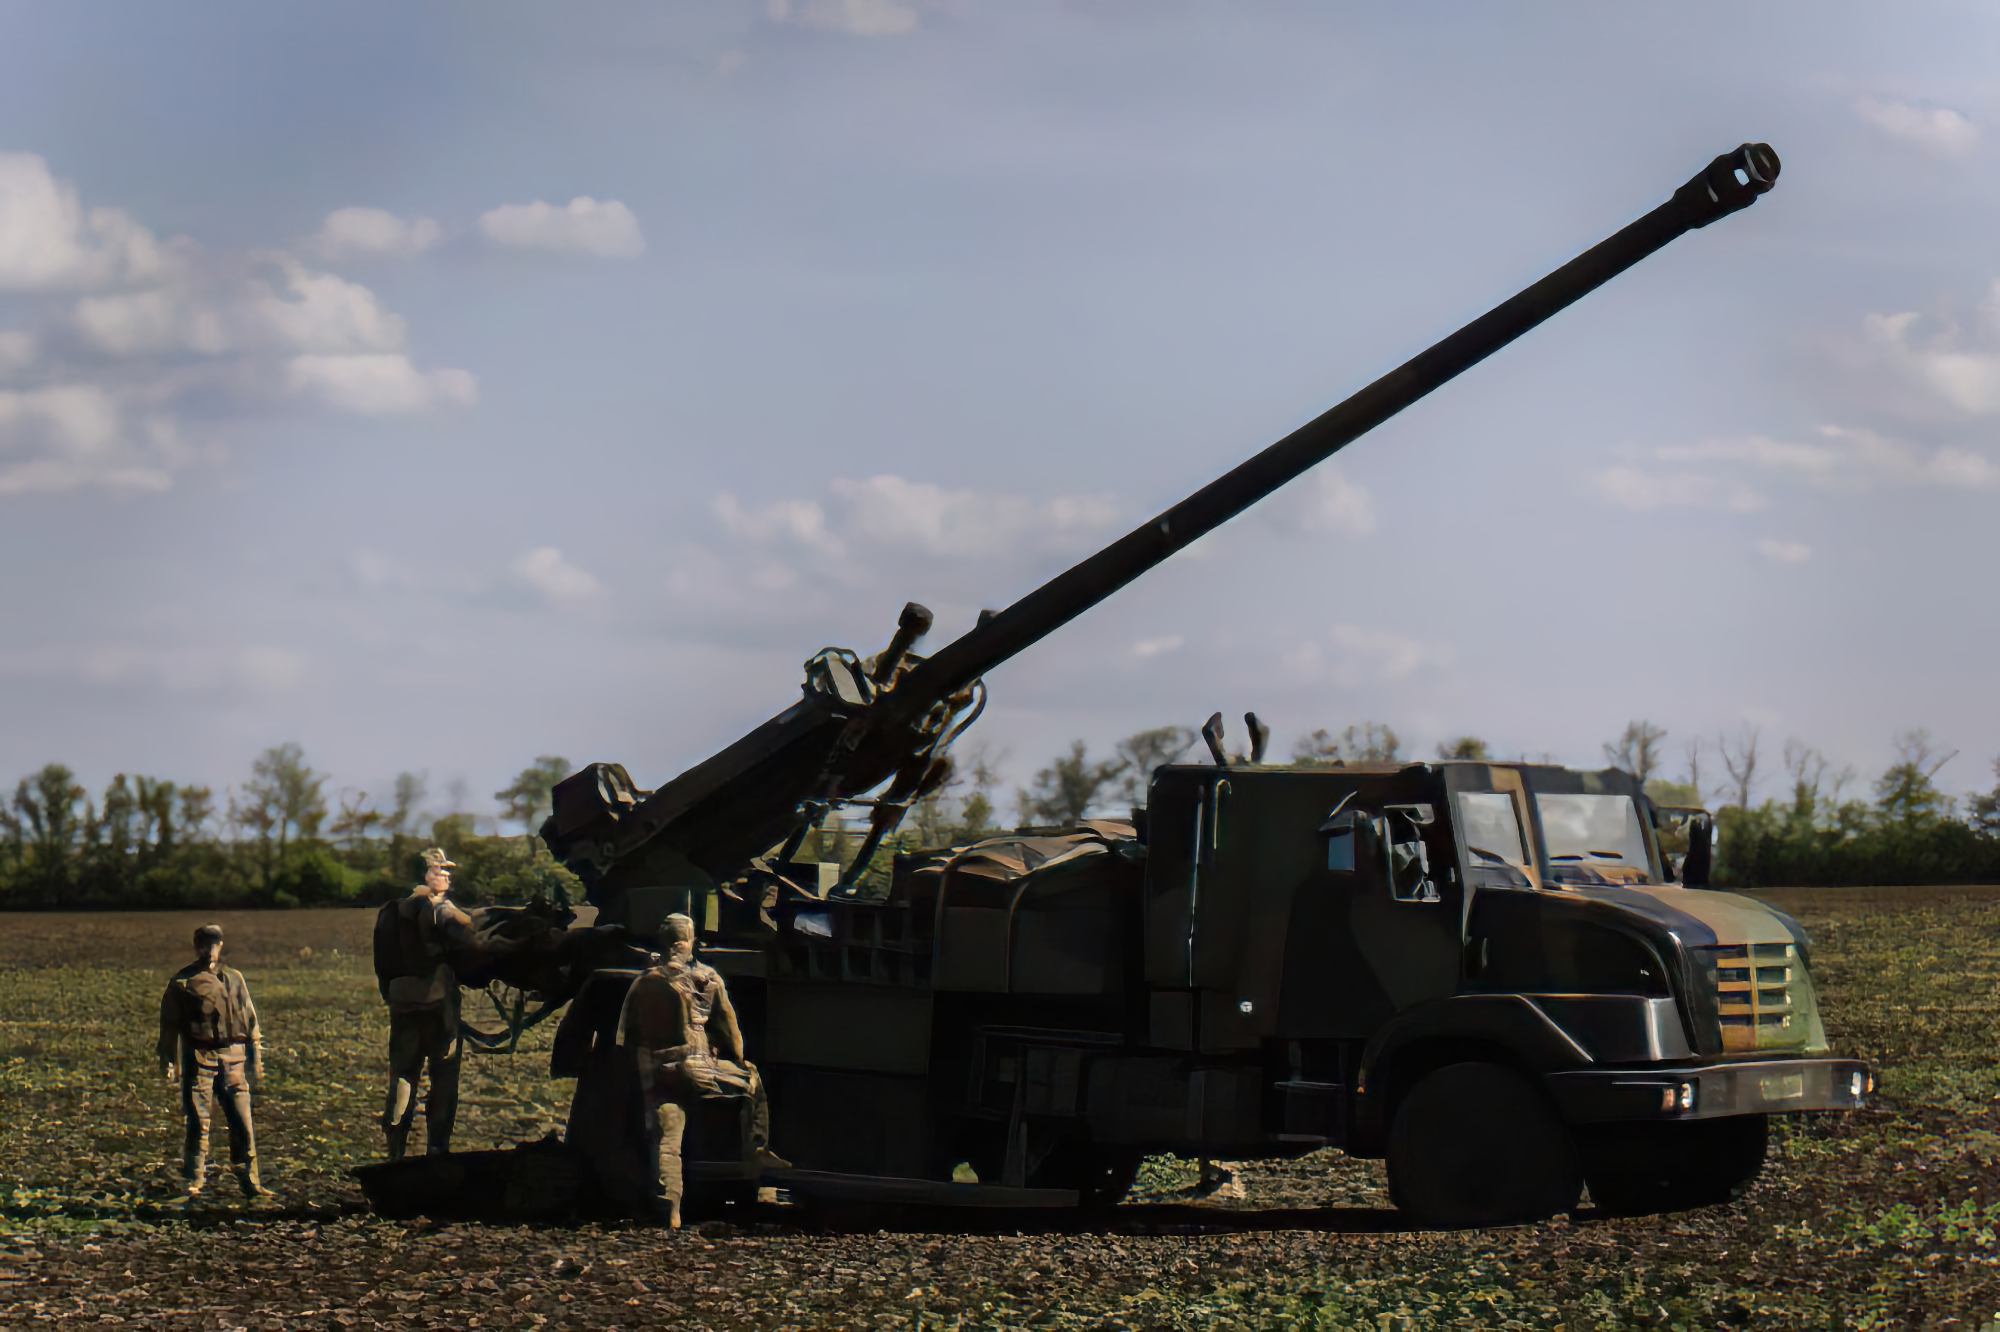 Naczelny dowódca Sił Zbrojnych Ukrainy Walery Załużny pokazał francuskie działa samobieżne CAESAR